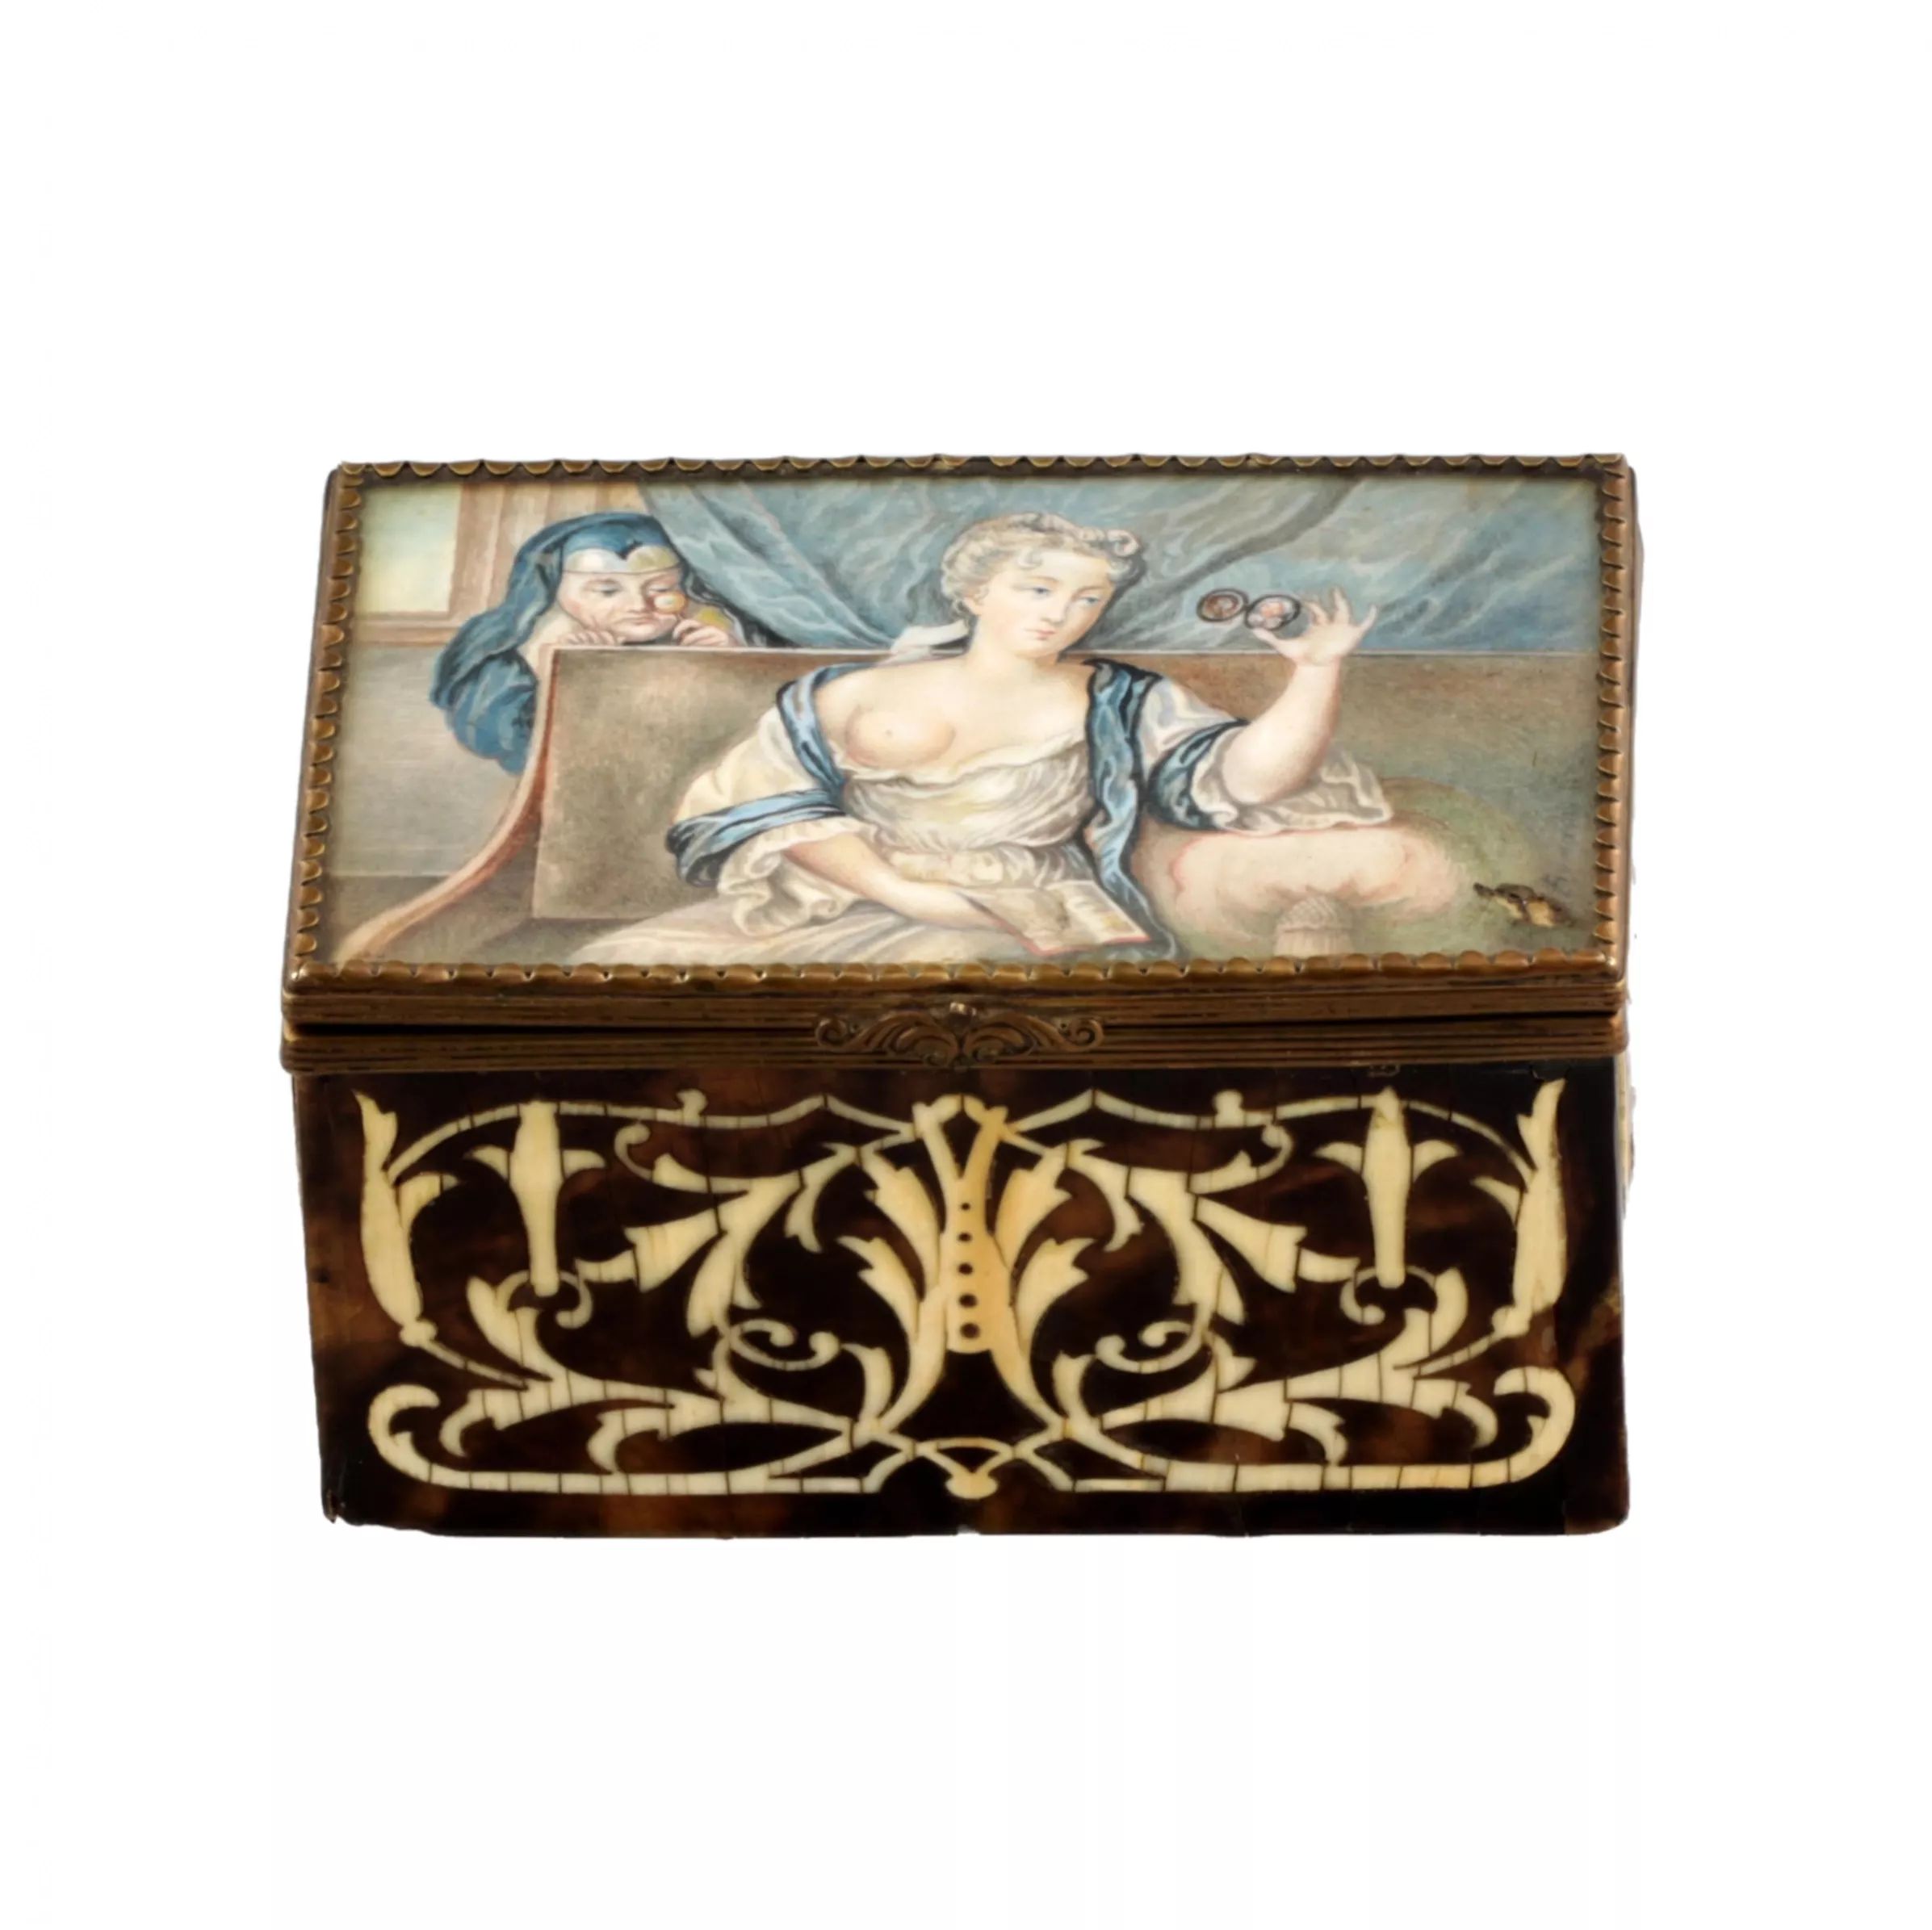 Boîte-avec-scène-erotique-19e-siècle